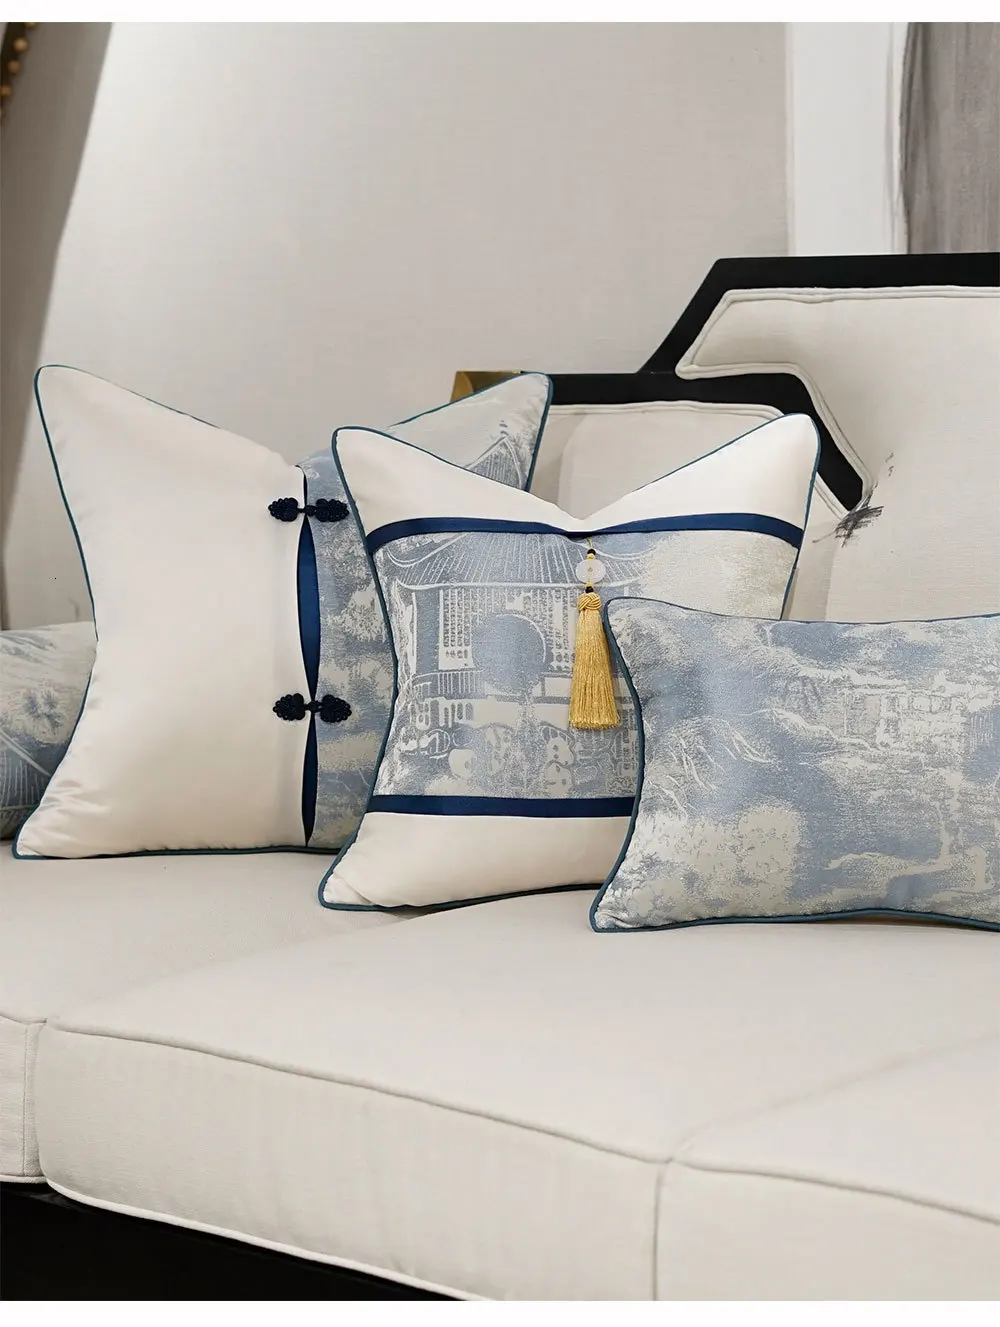 Avigers синий белый Чехлы для подушек деревья кисточки пэчворк китайский стиль наволочки для дивана автомобиля спальни гостиной